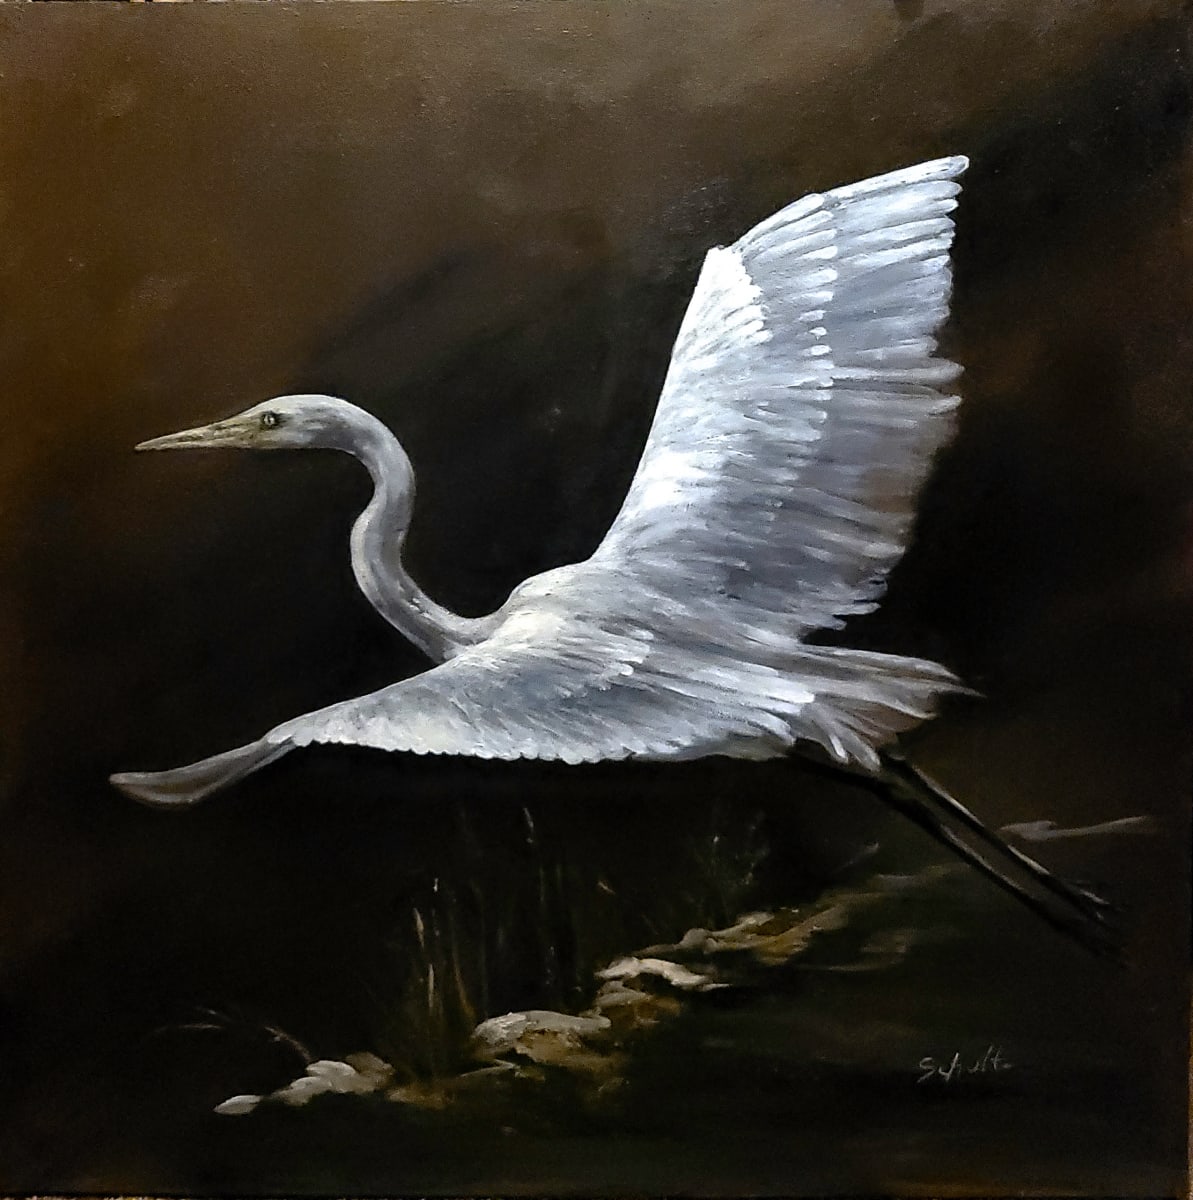 Great Flight by Sandra Schultz  Image: Great Egret in Flight